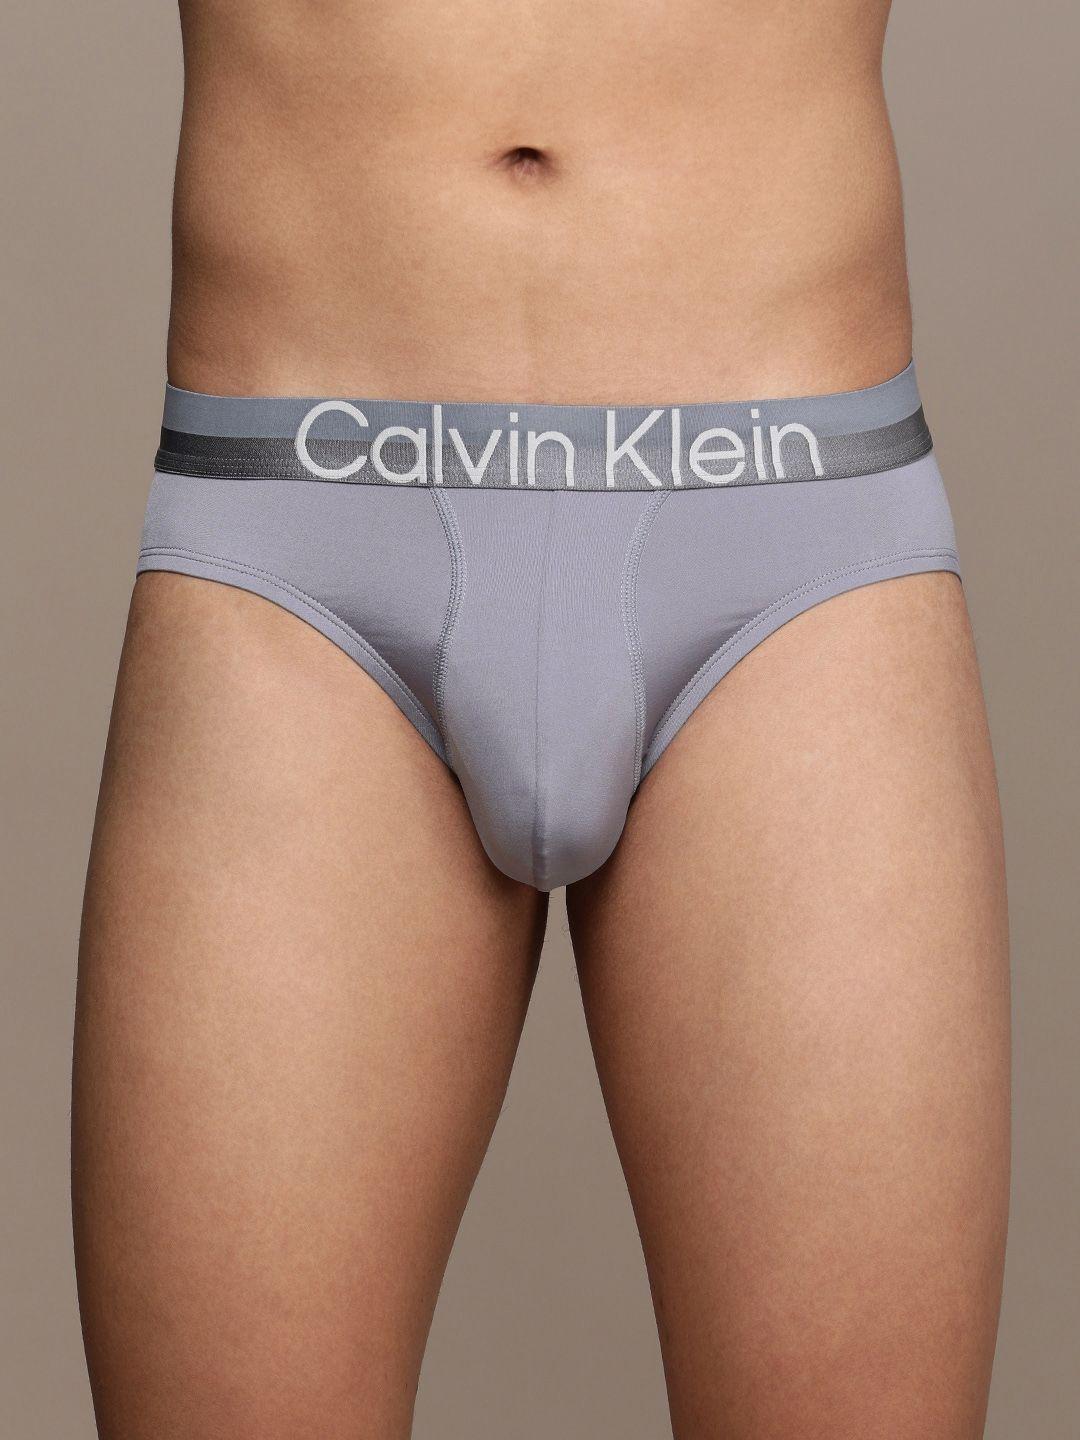 calvin klein underwear men grey solid briefs- nb2973c4a